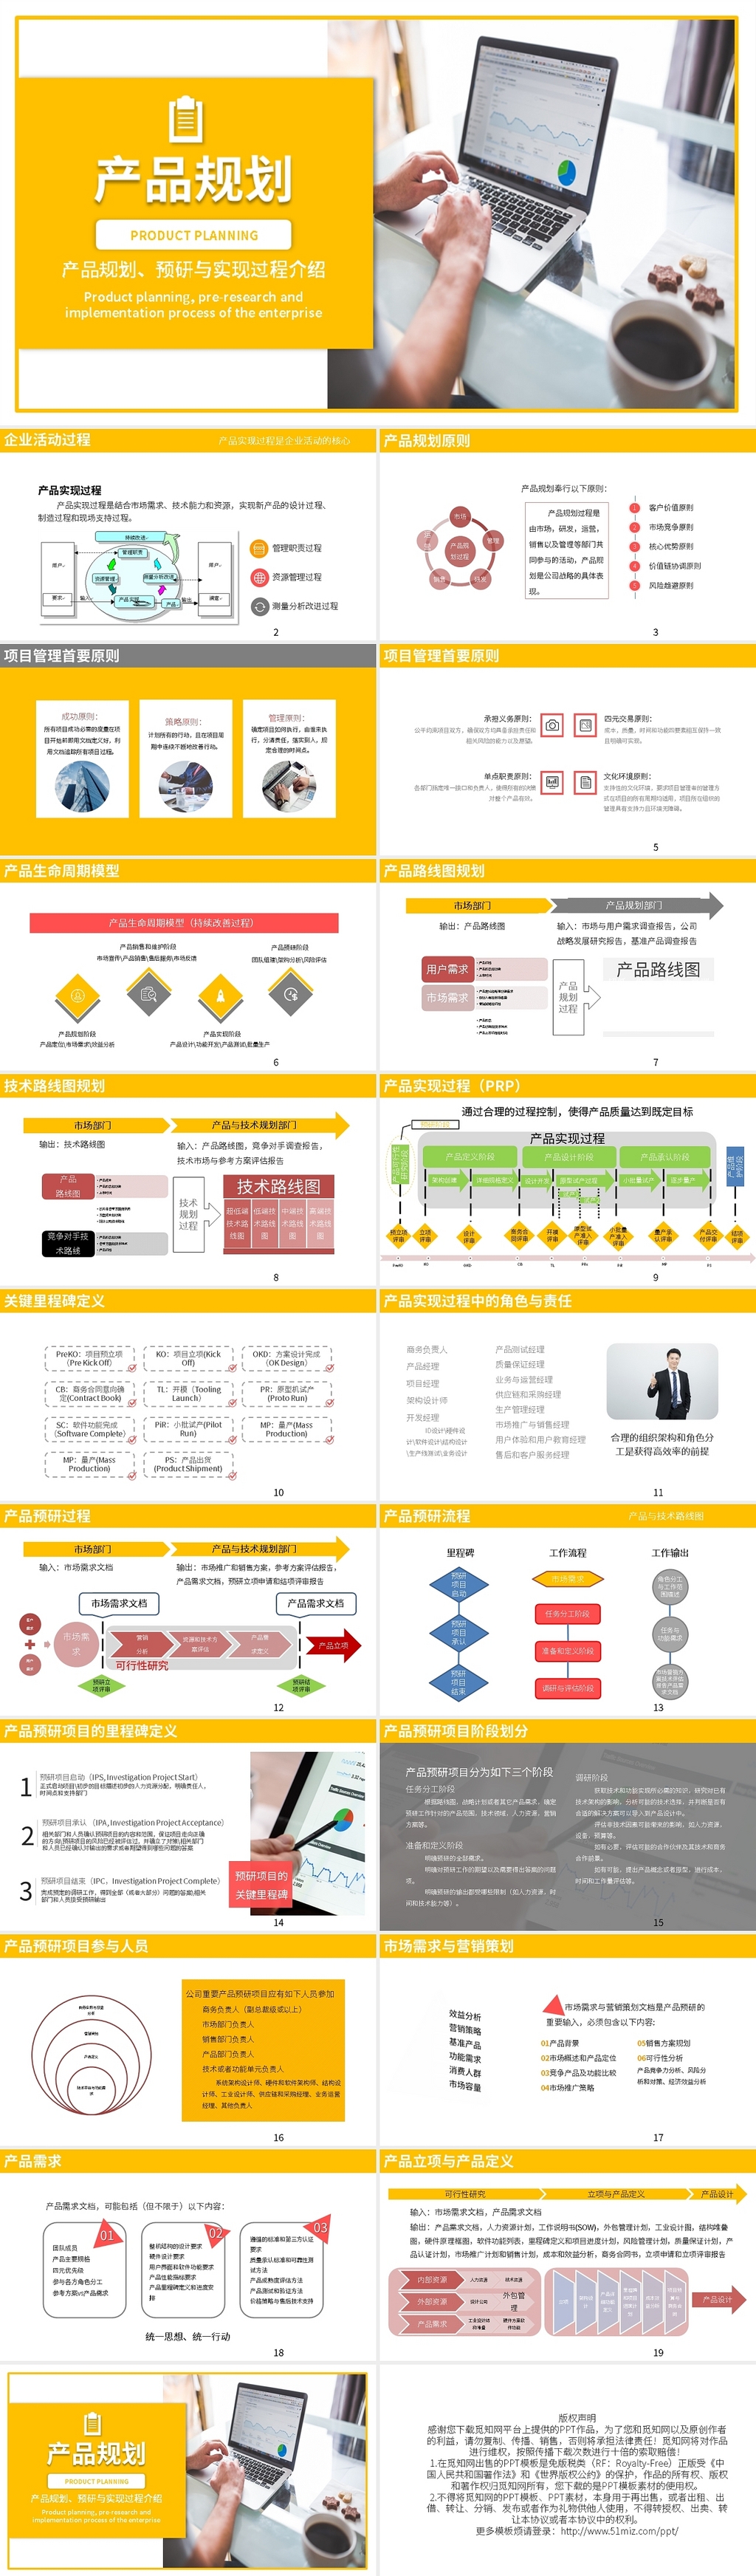 黄色企业产品介绍与研究规划PPT模板宣传PPT动态PPT